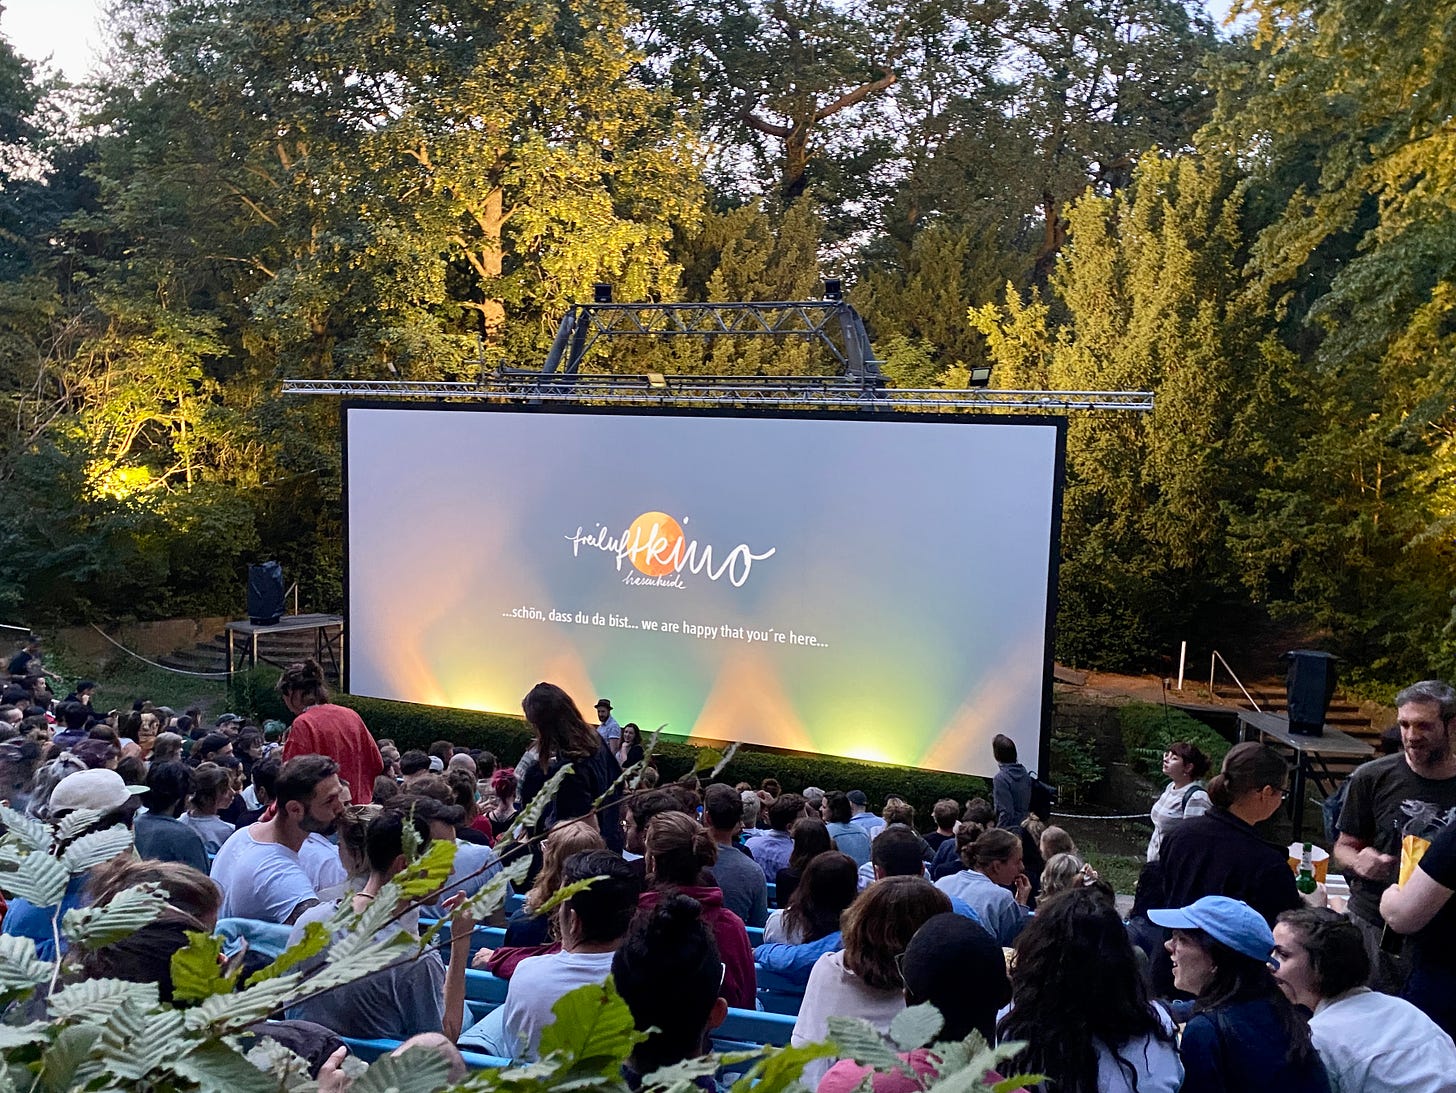 Imagem: Um cinema no meio de um parque, árvores atrás do telão e plateia lotada. Sol se pondo.